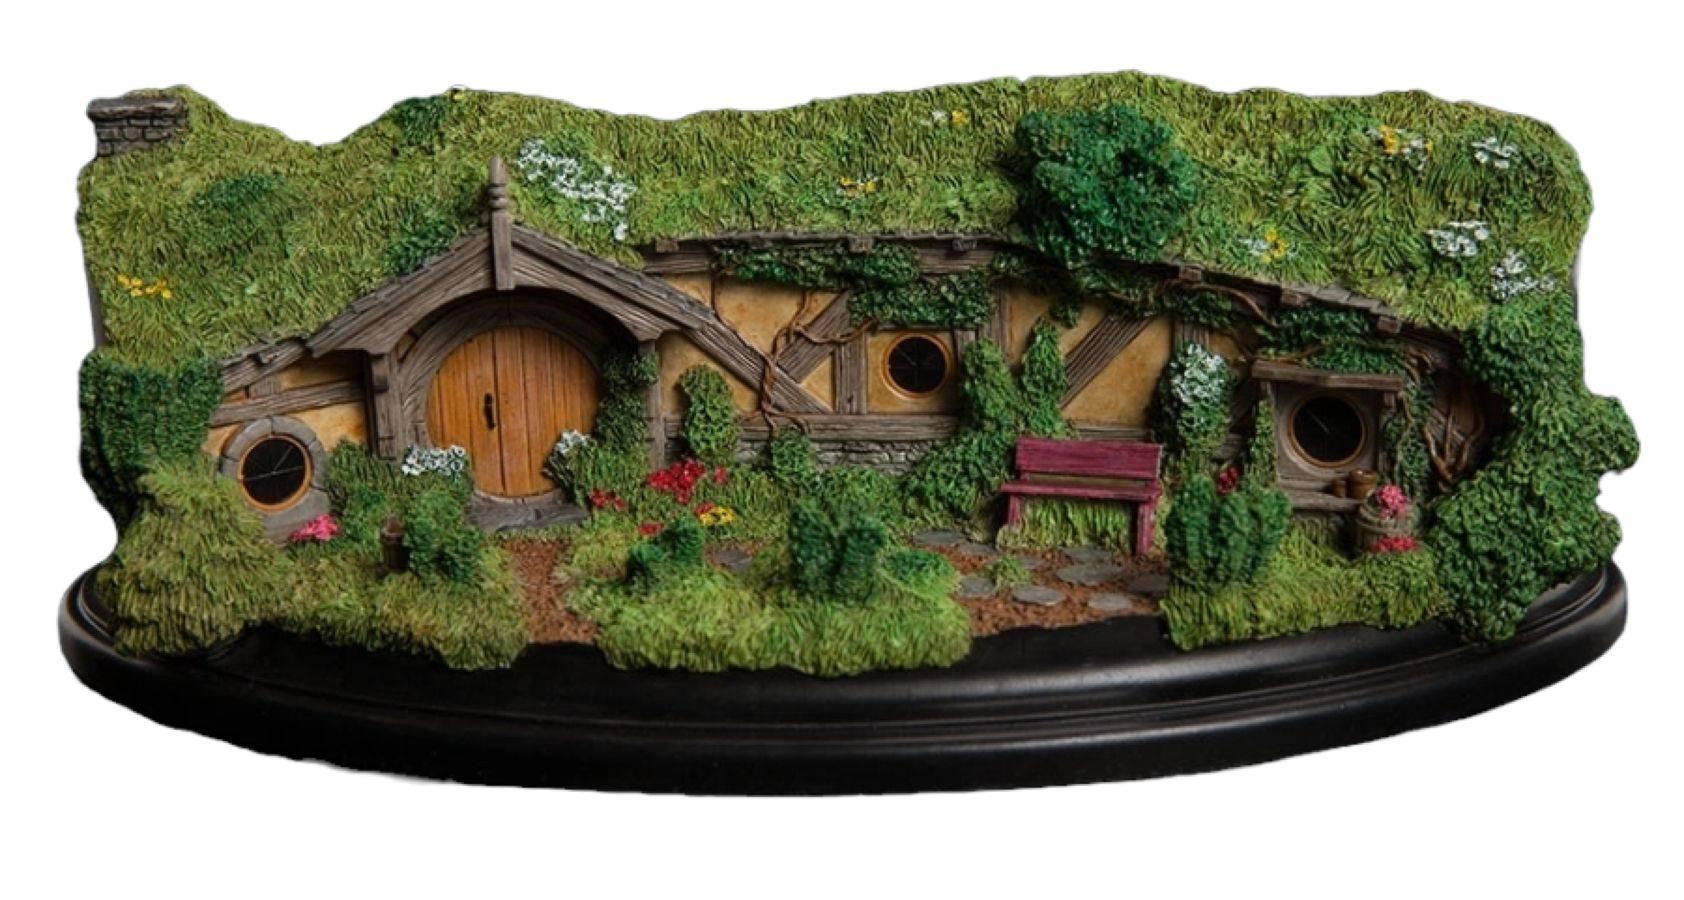 WET01677 The Hobbit - #23 The Great Garden Smial Hobbit Hole Diorama - Weta Workshop - Titan Pop Culture